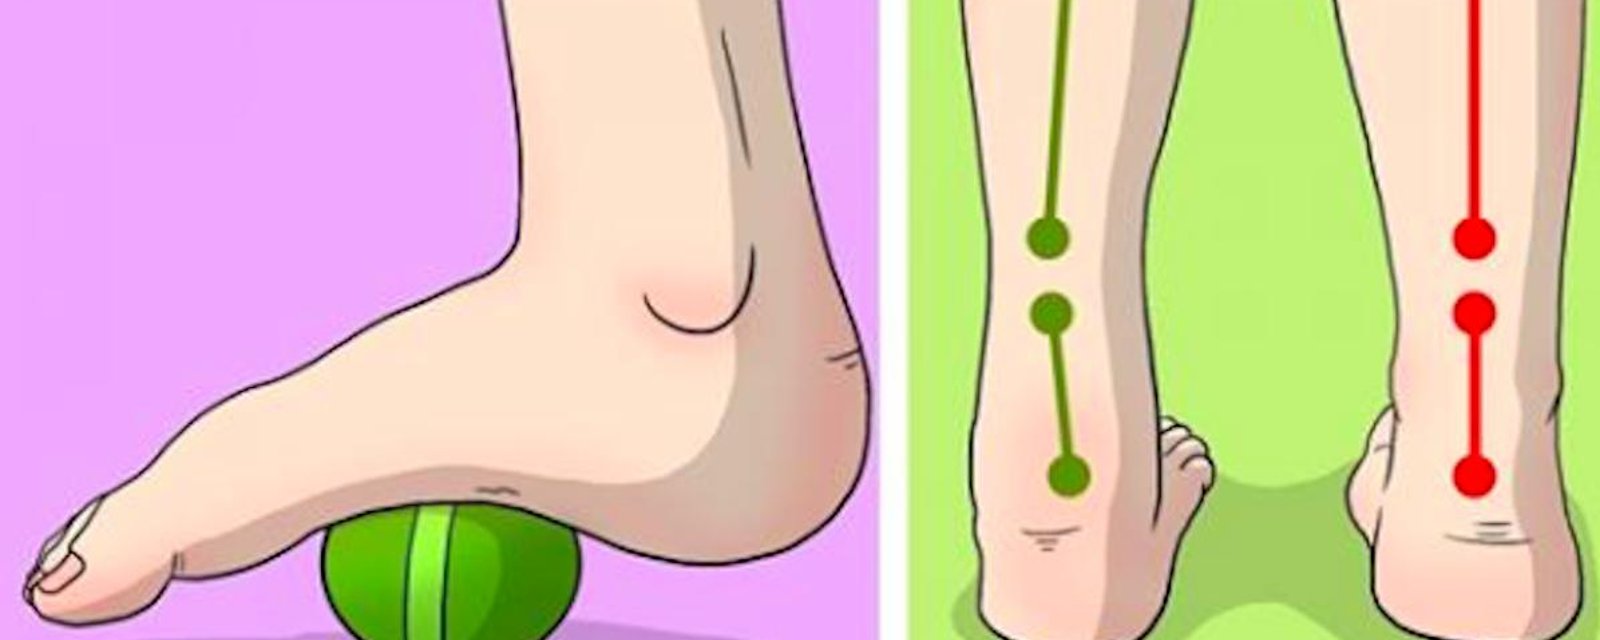 6 exercices faciles pour en finir avec vos douleurs aux pieds, aux genoux et aux hanches